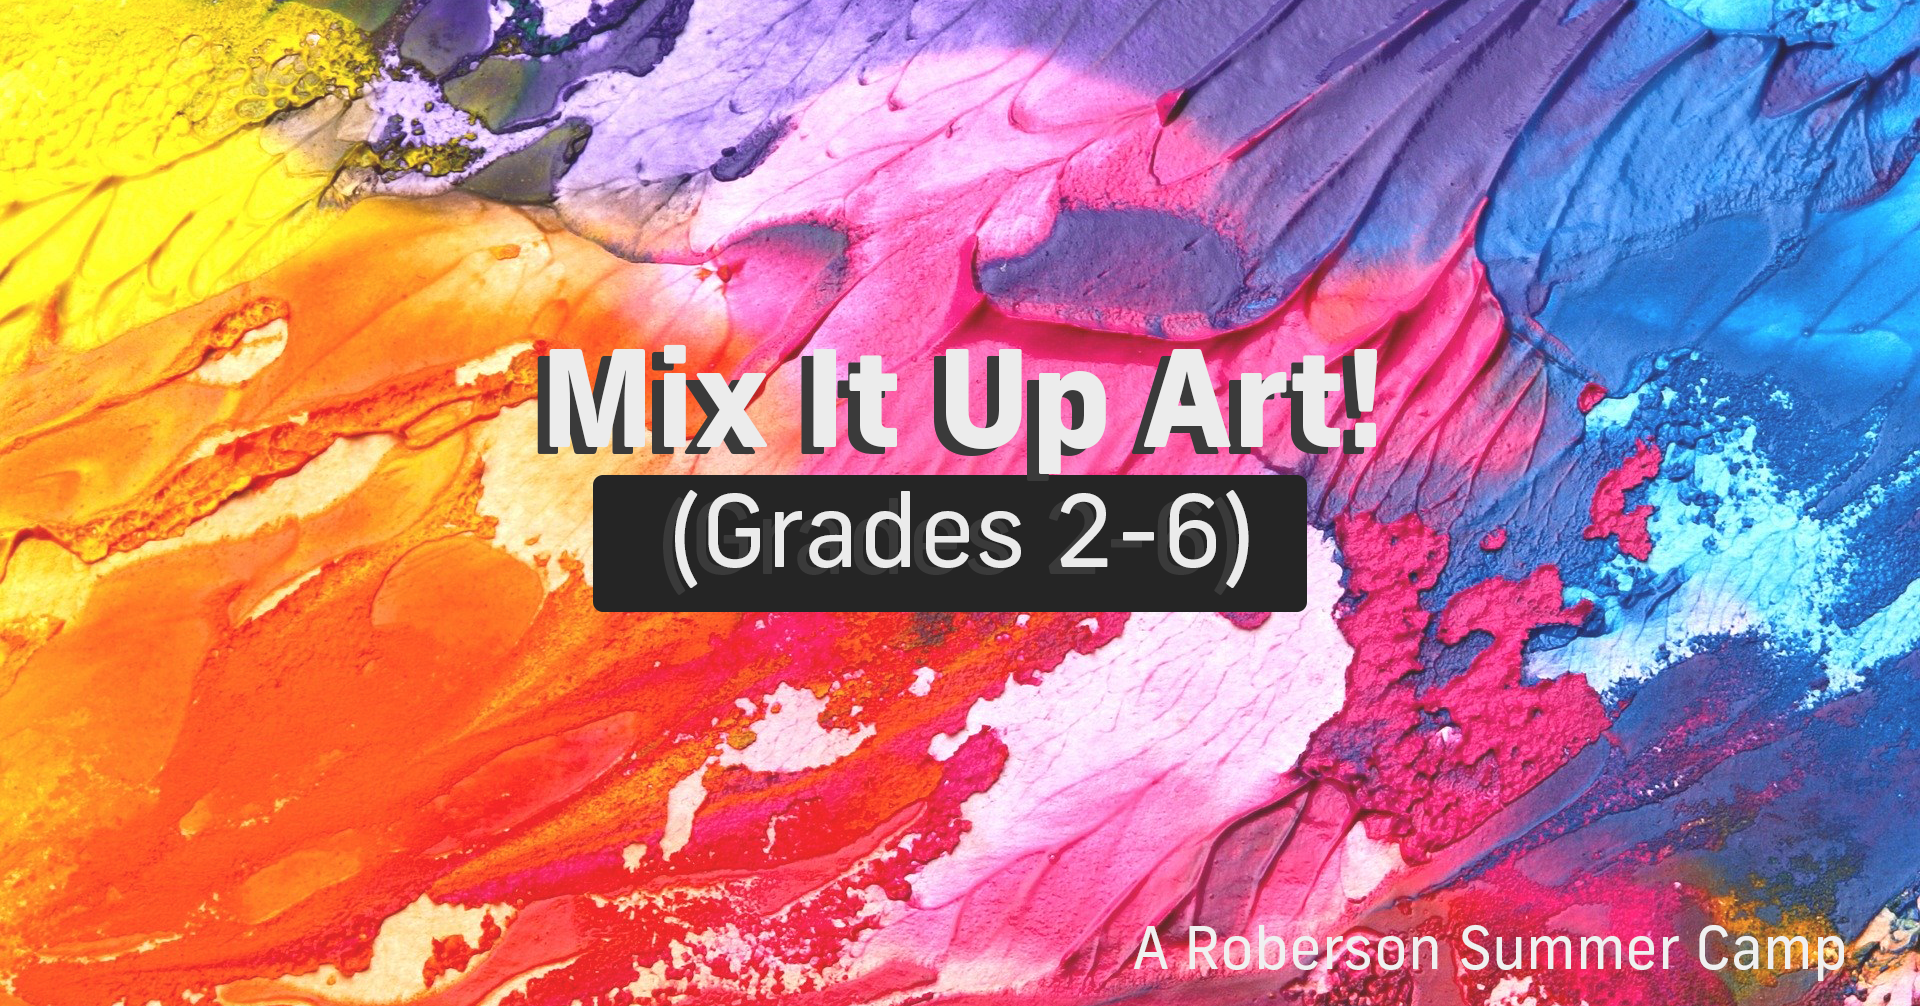 roberson summer camp: mix it up art